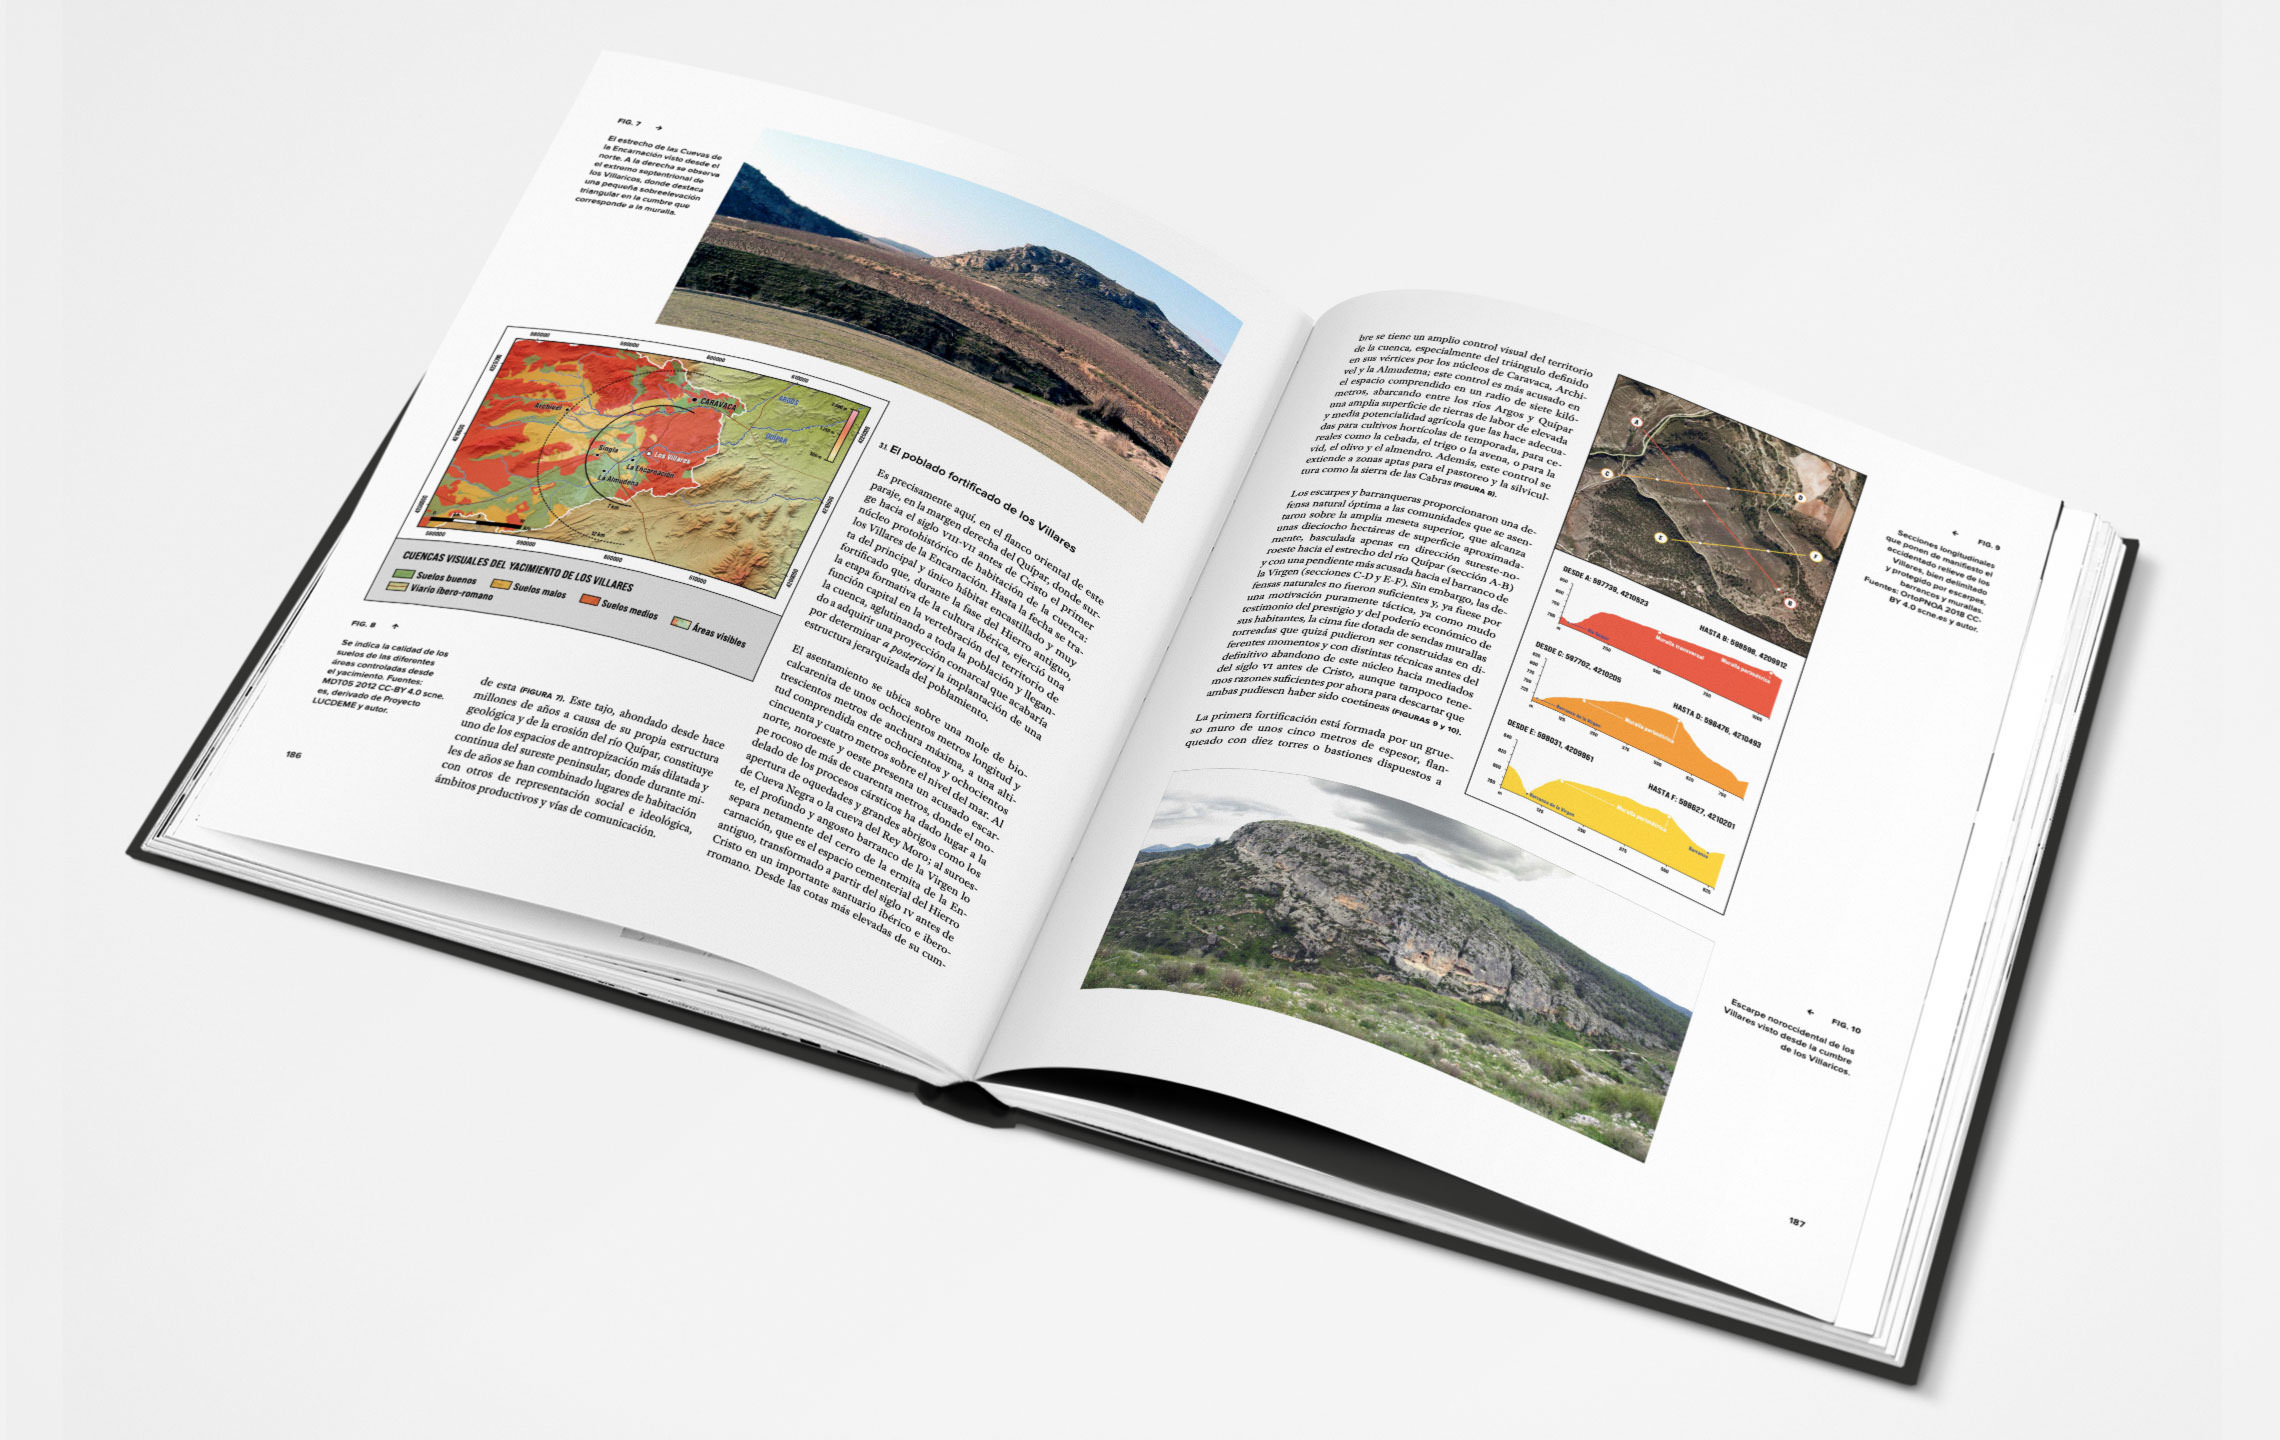 Diseño sobre el layout del libro de historia y arqueología